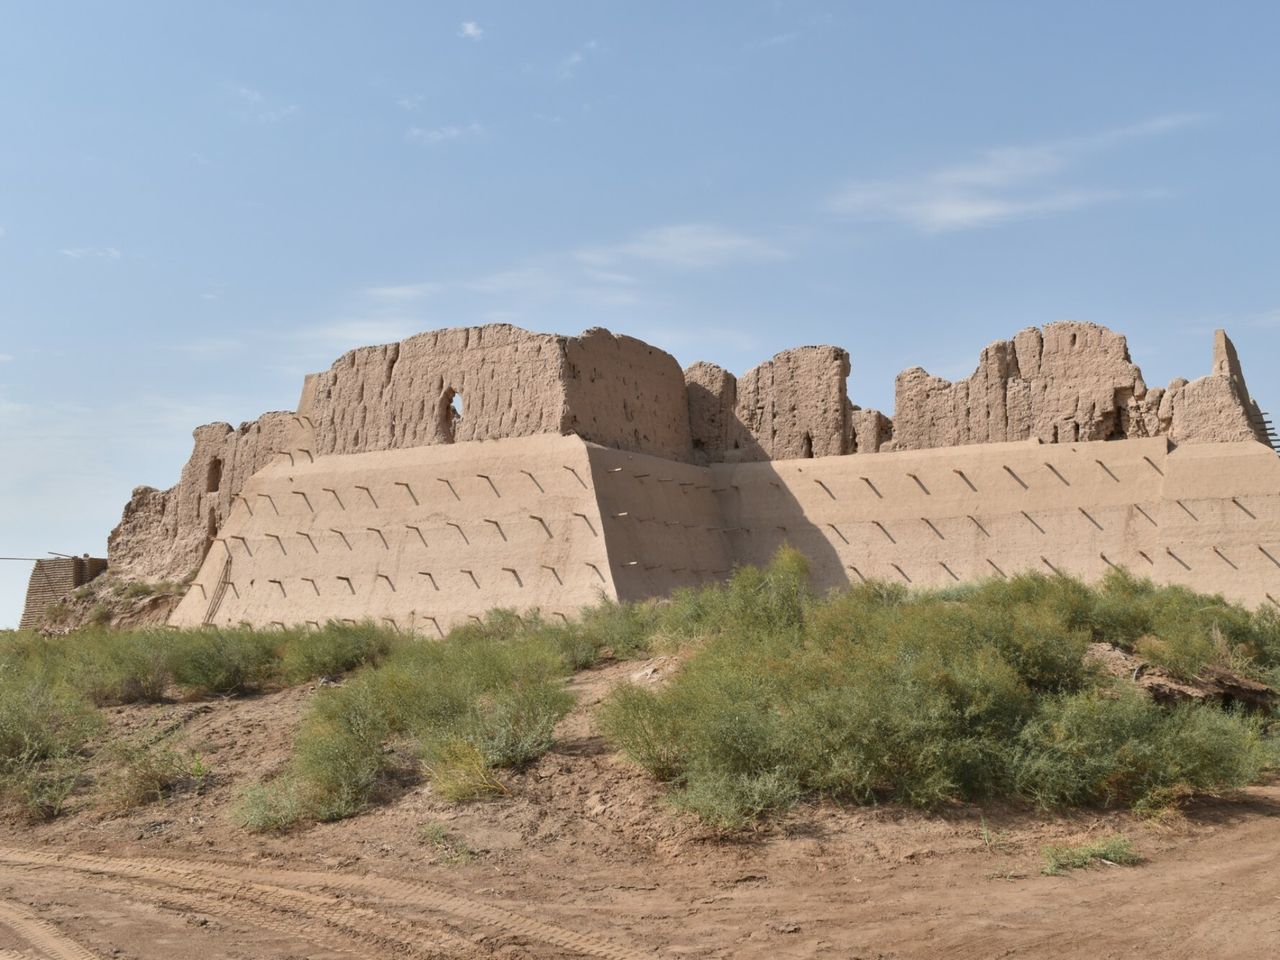 Через пустыни к древним крепостям Хорезма | Цена 135€, отзывы, описание экскурсии